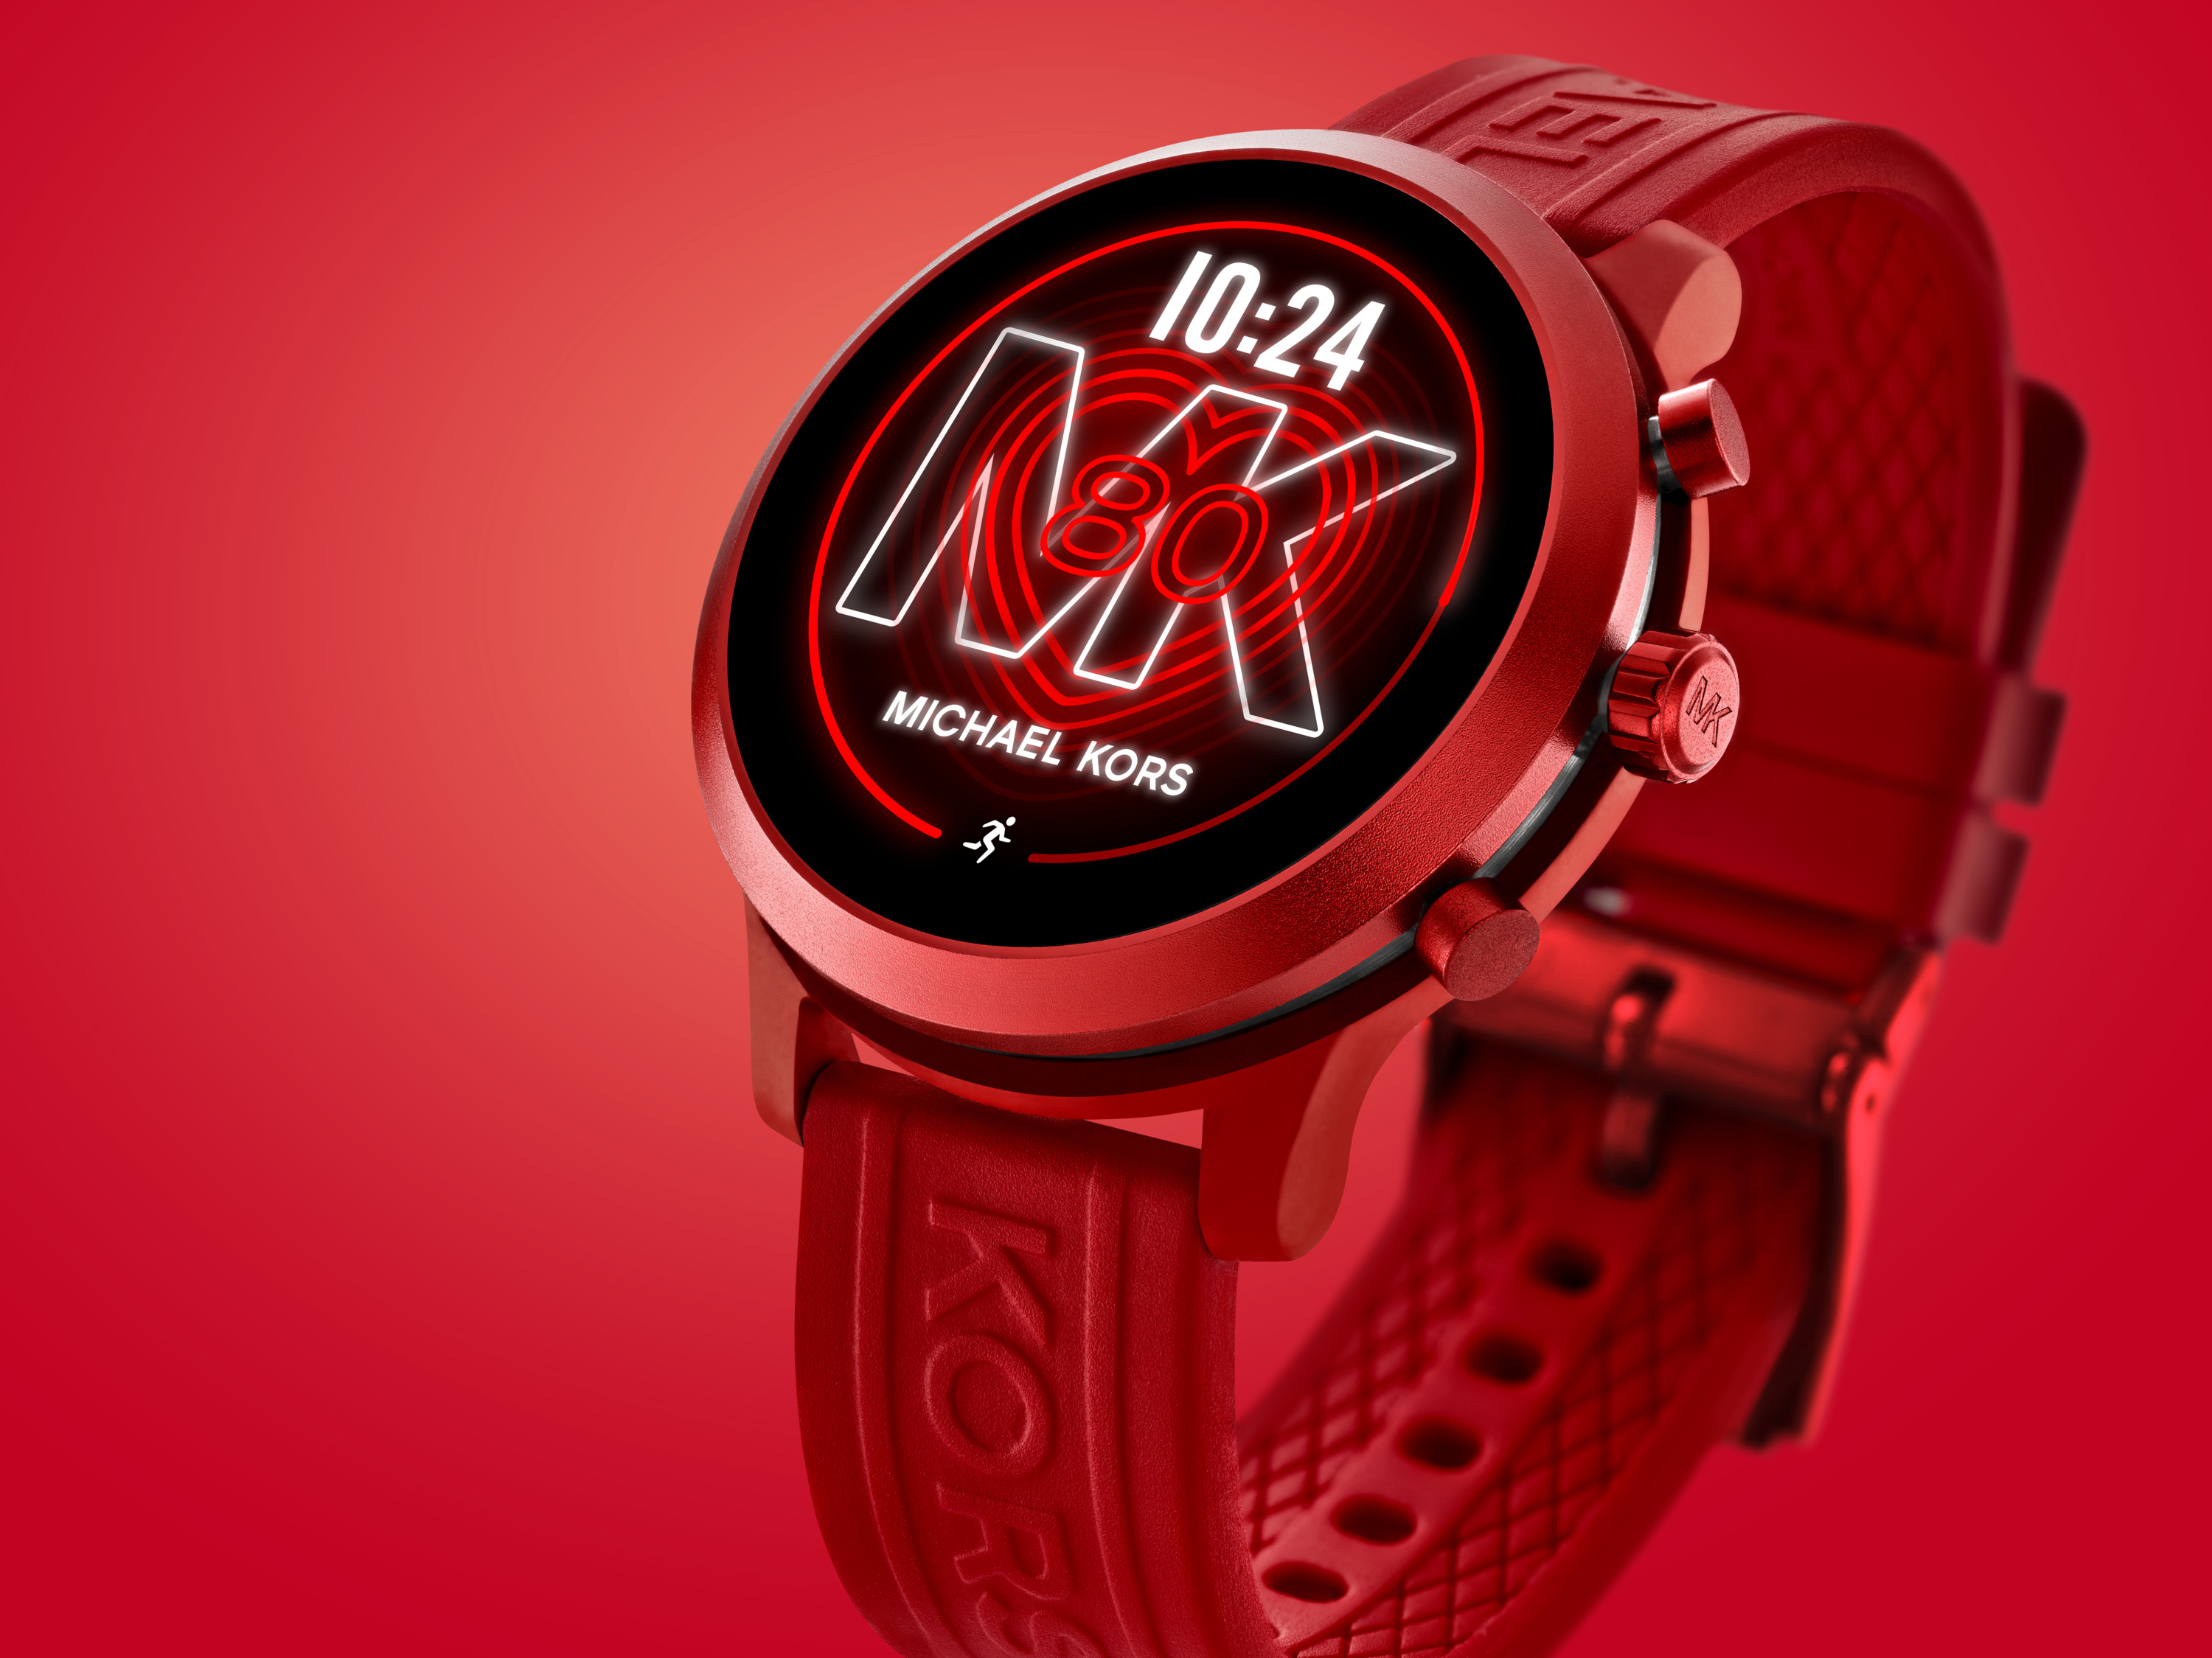 Michael Kors Access unveils MKGO and Lexington 2 – the next generation smartwatches - Alvinology